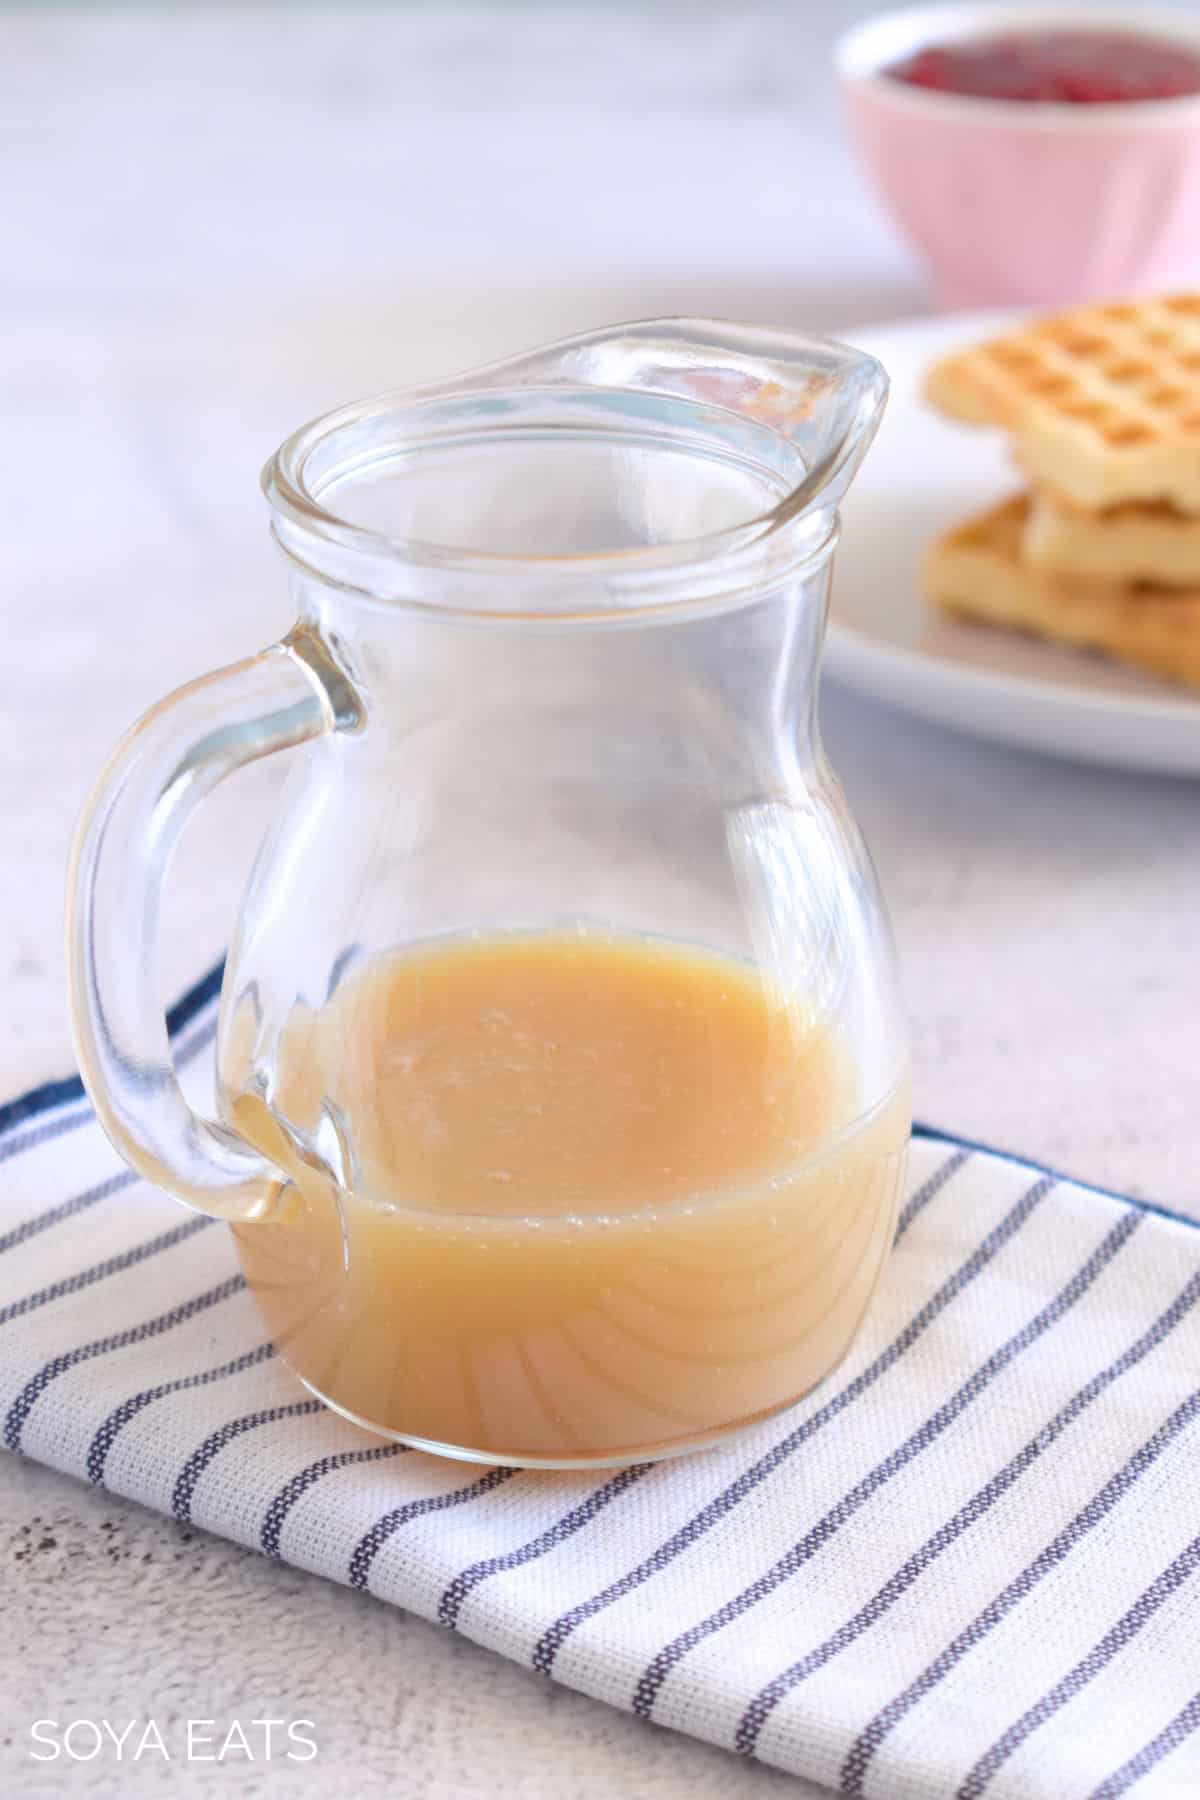 Condensed milk in a jug.